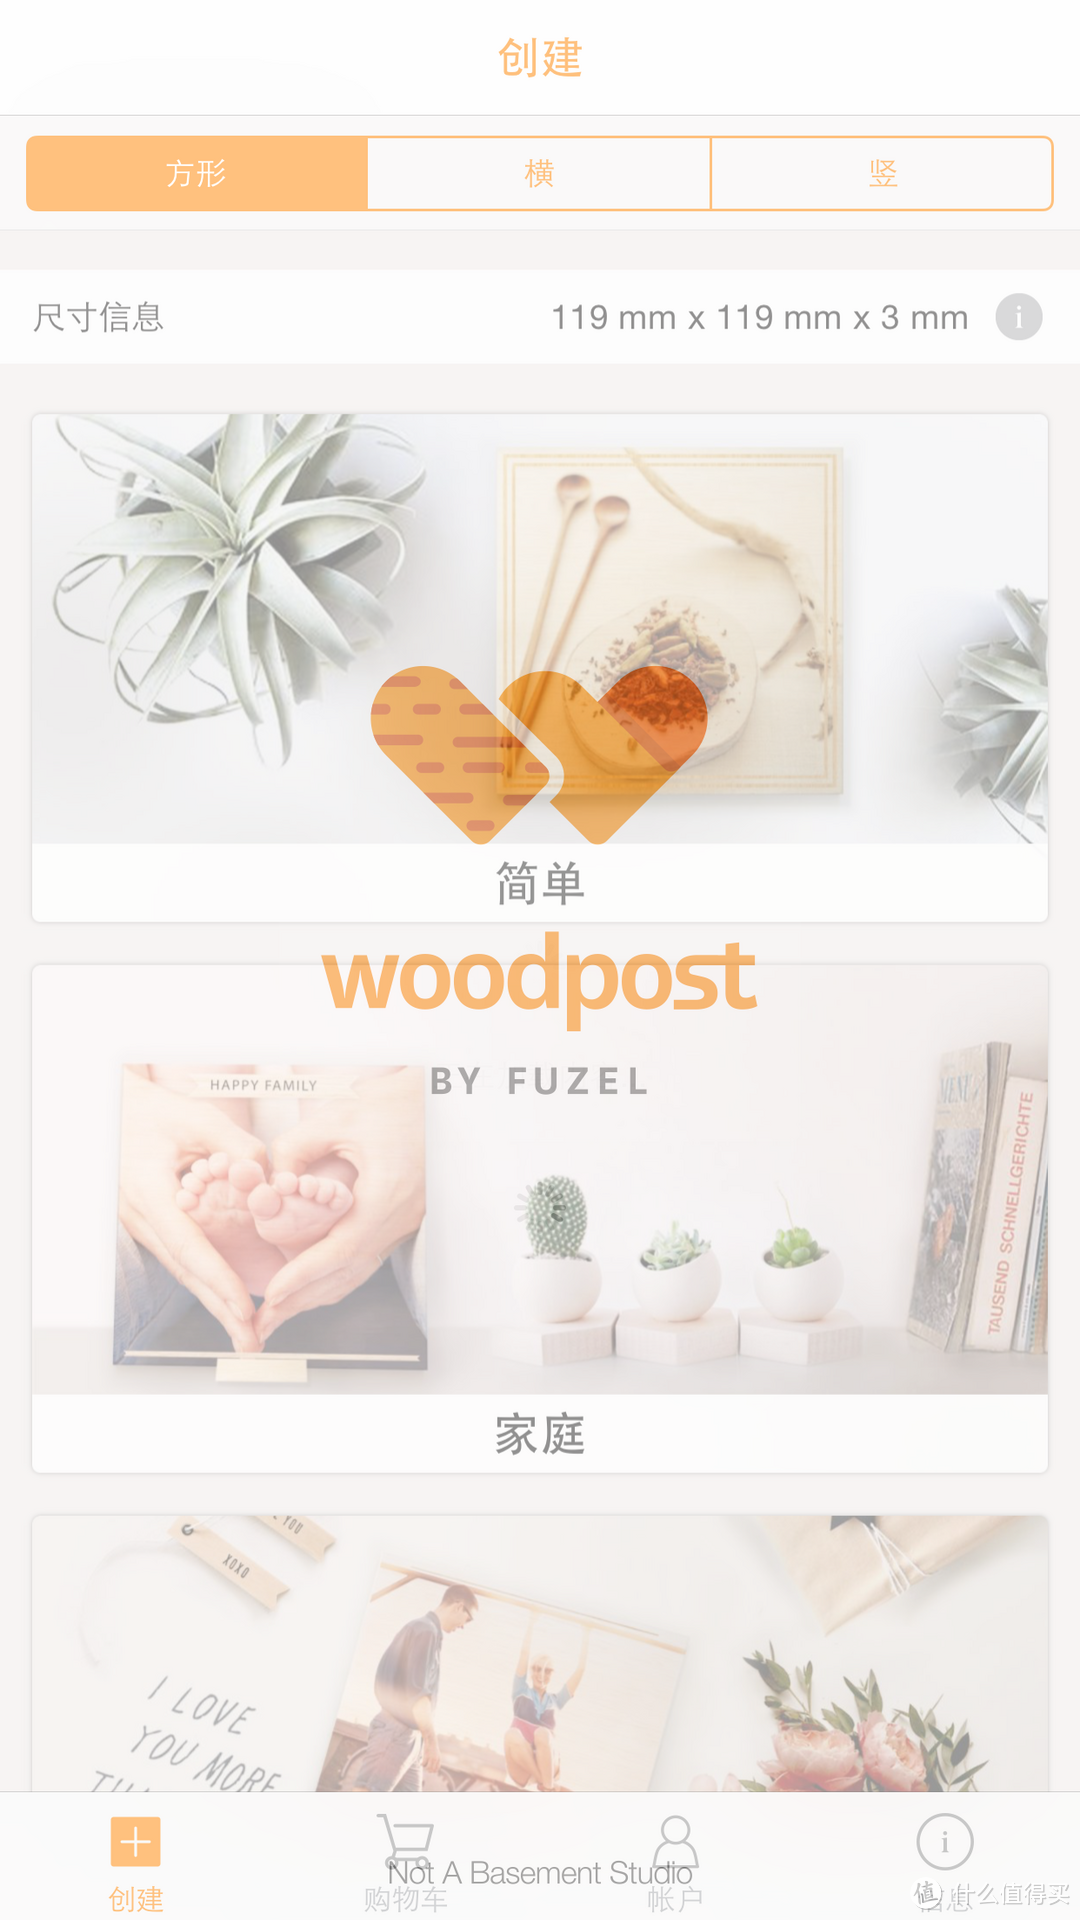 通过 App 订制木质明信片：woodpost 使用体验